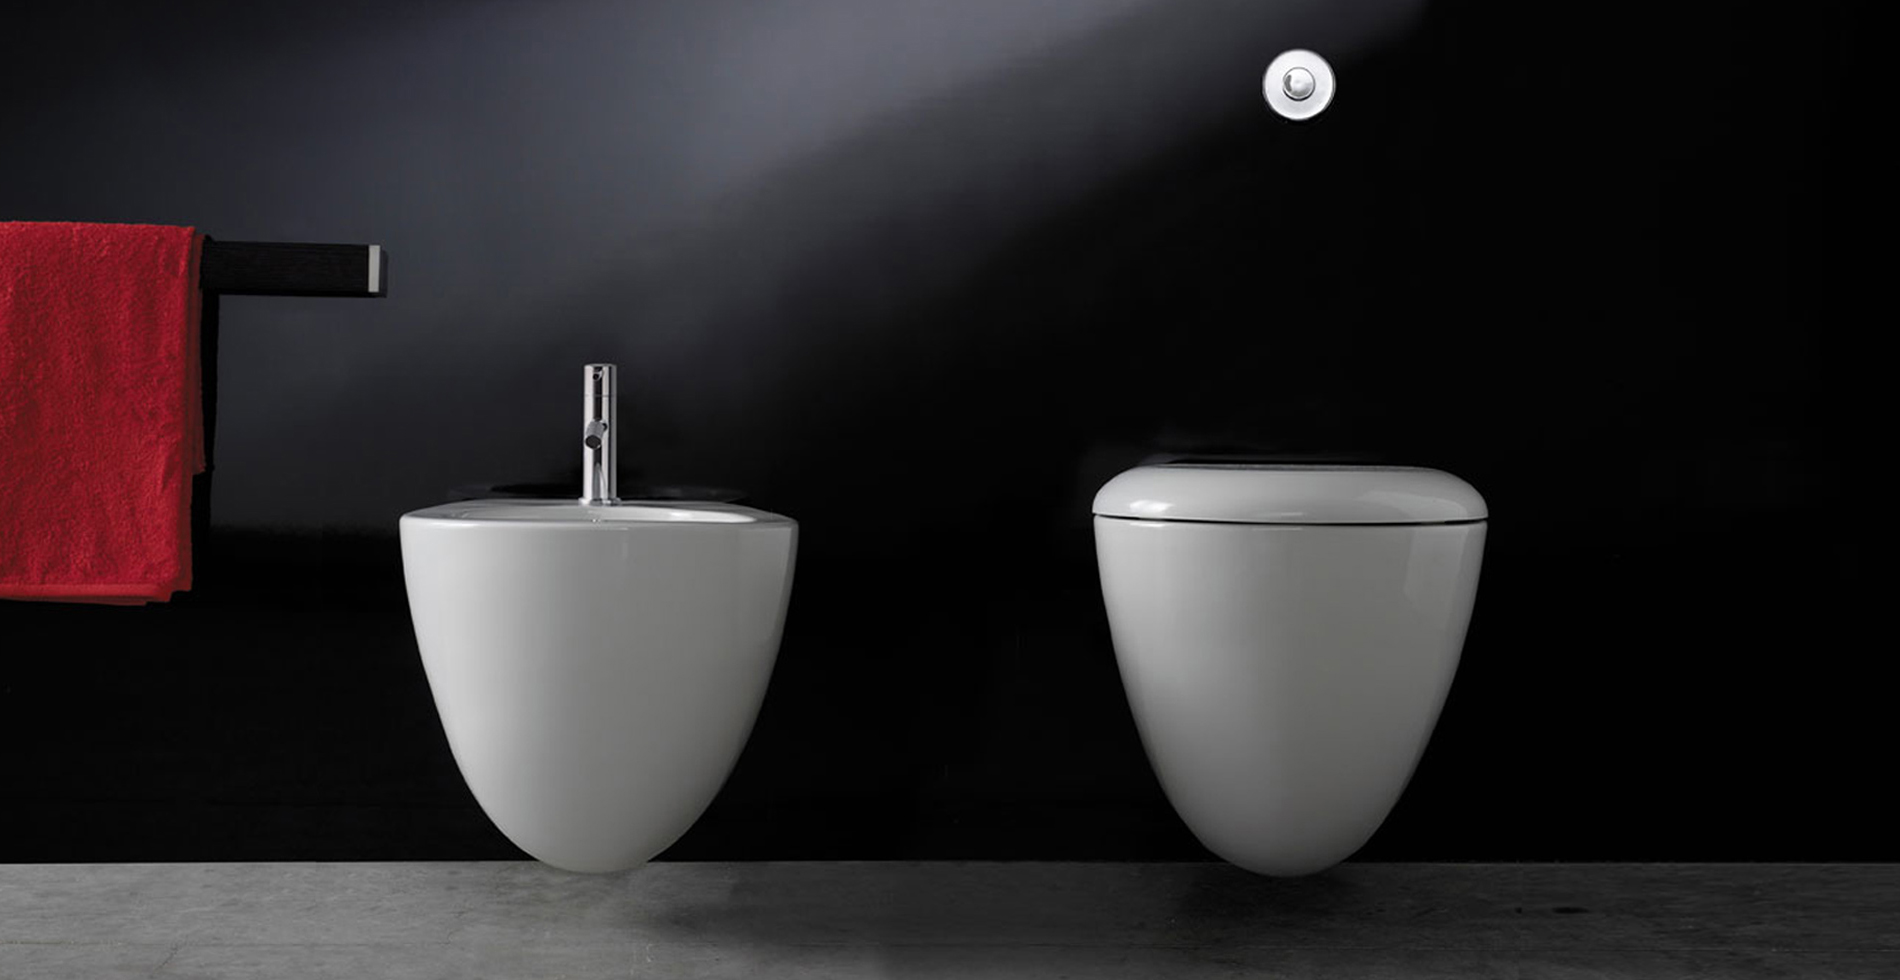 Bowl | Sanitari di ceramica inspirato uovo | Arredo bagno | Design by Antonio Pascale per Ceramica Globo